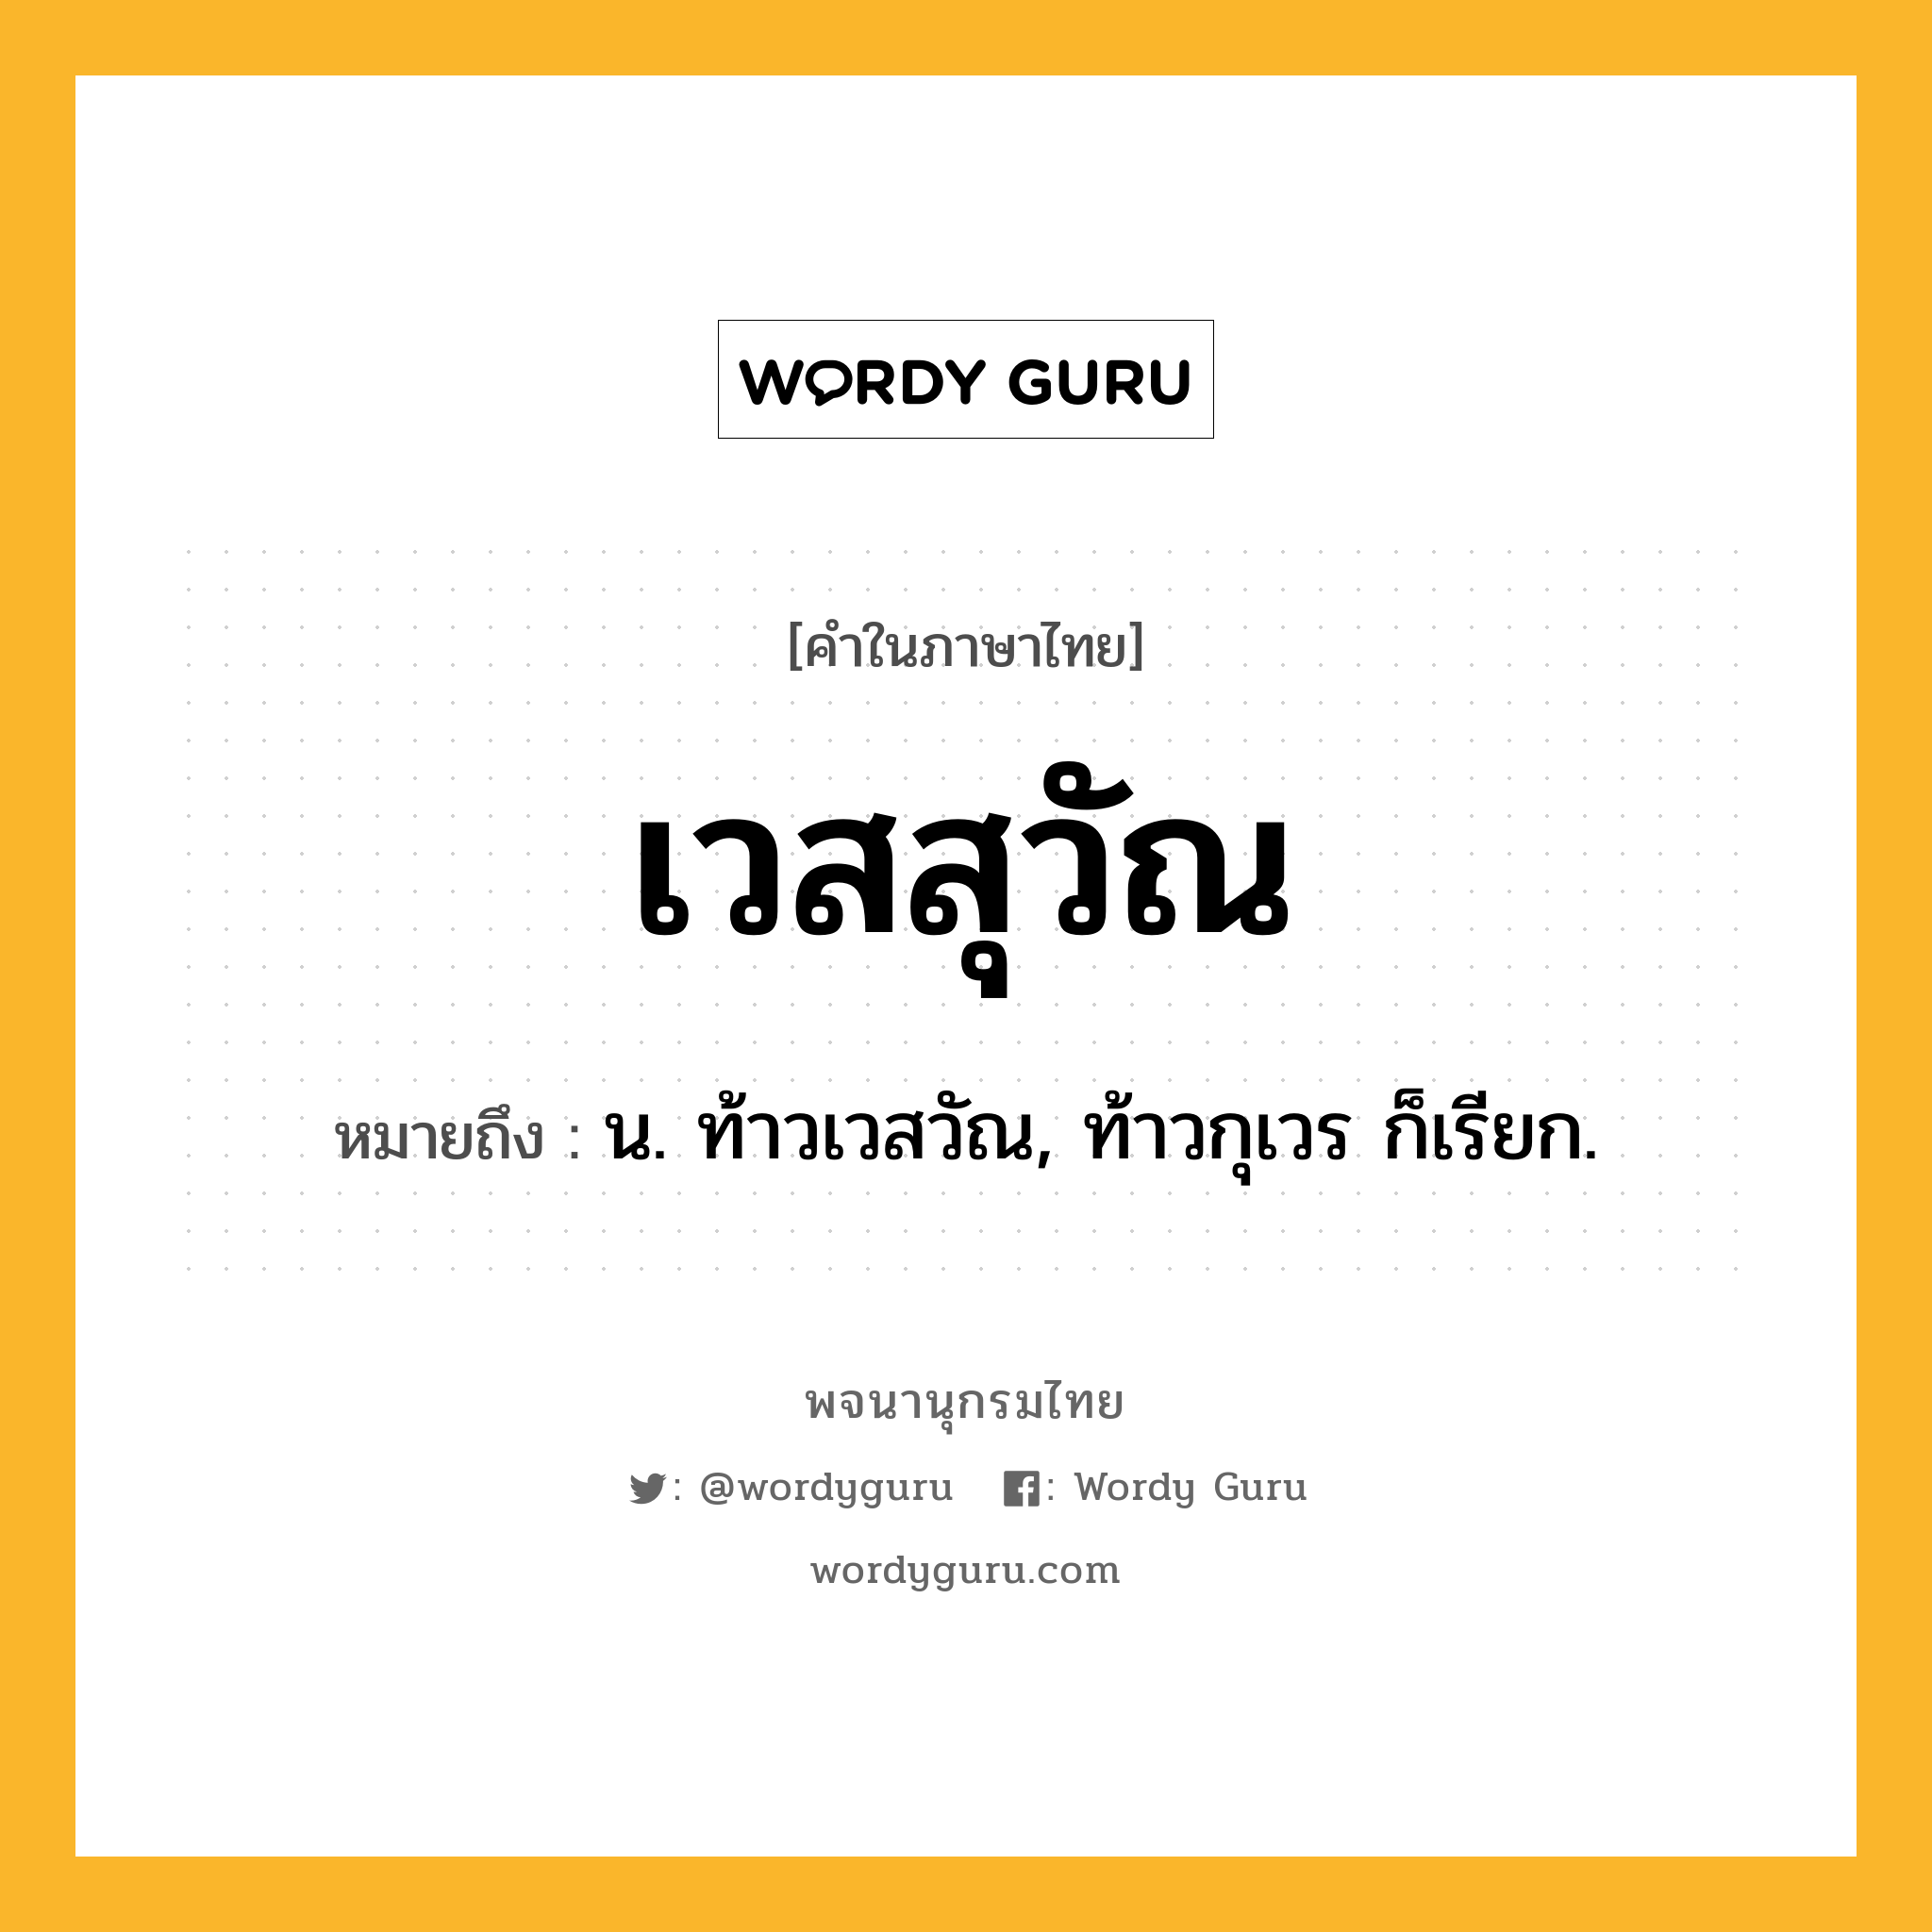 เวสสุวัณ ความหมาย หมายถึงอะไร?, คำในภาษาไทย เวสสุวัณ หมายถึง น. ท้าวเวสวัณ, ท้าวกุเวร ก็เรียก.